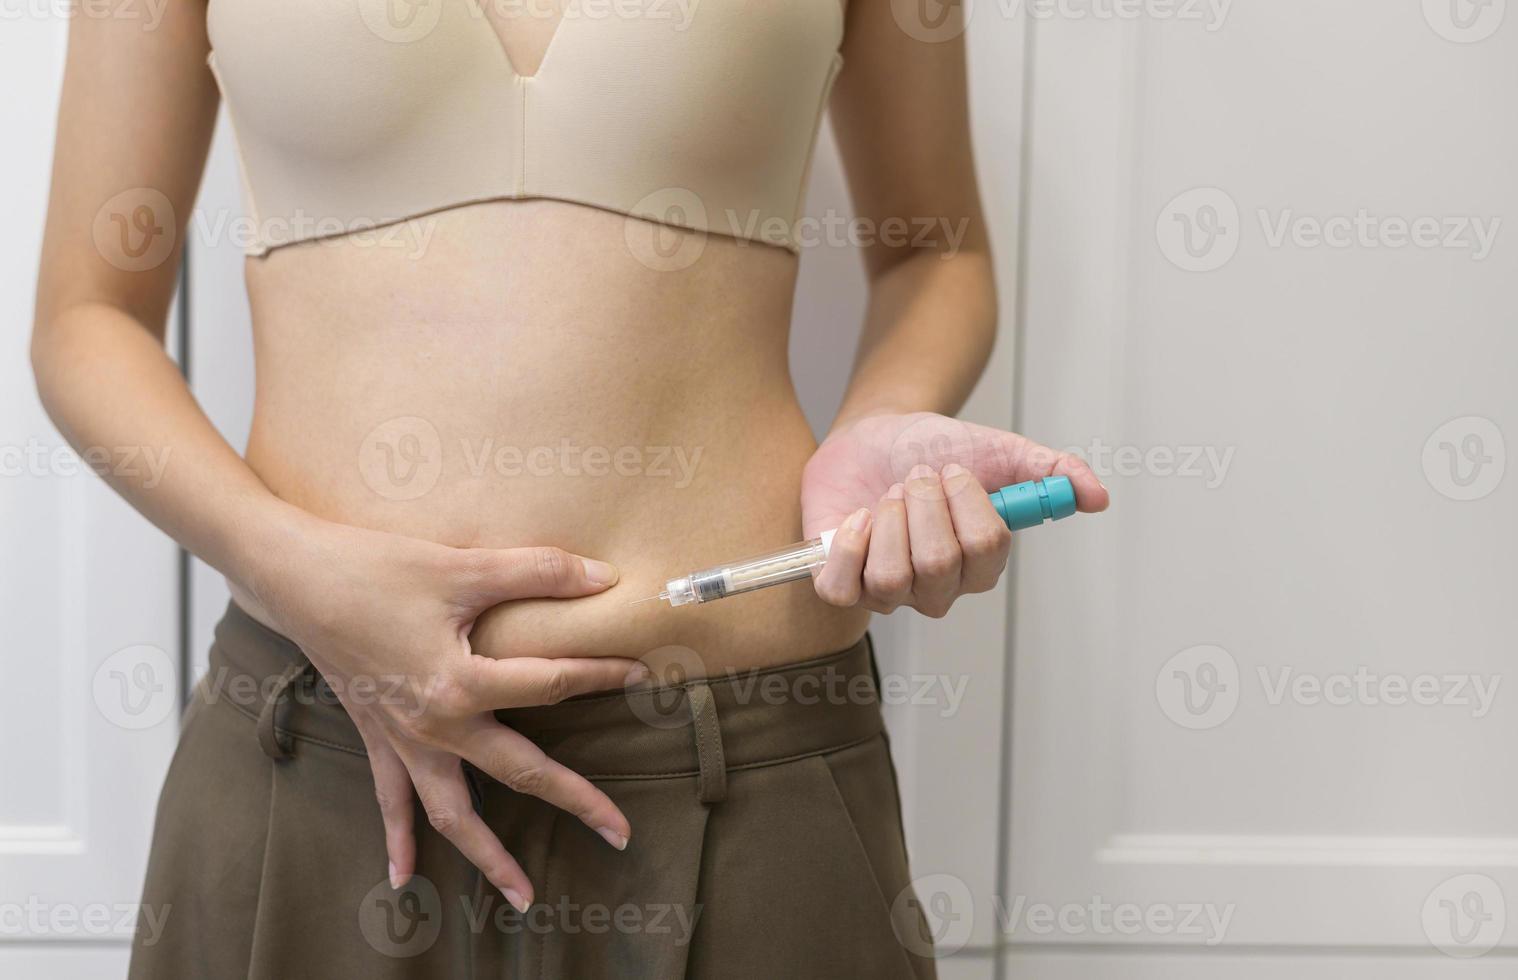 Feche a mulher usando injeção de tratamento de fertilização in vitro na barriga para preparar a fertilidade reprodutiva, estimulação da ovulação. foto